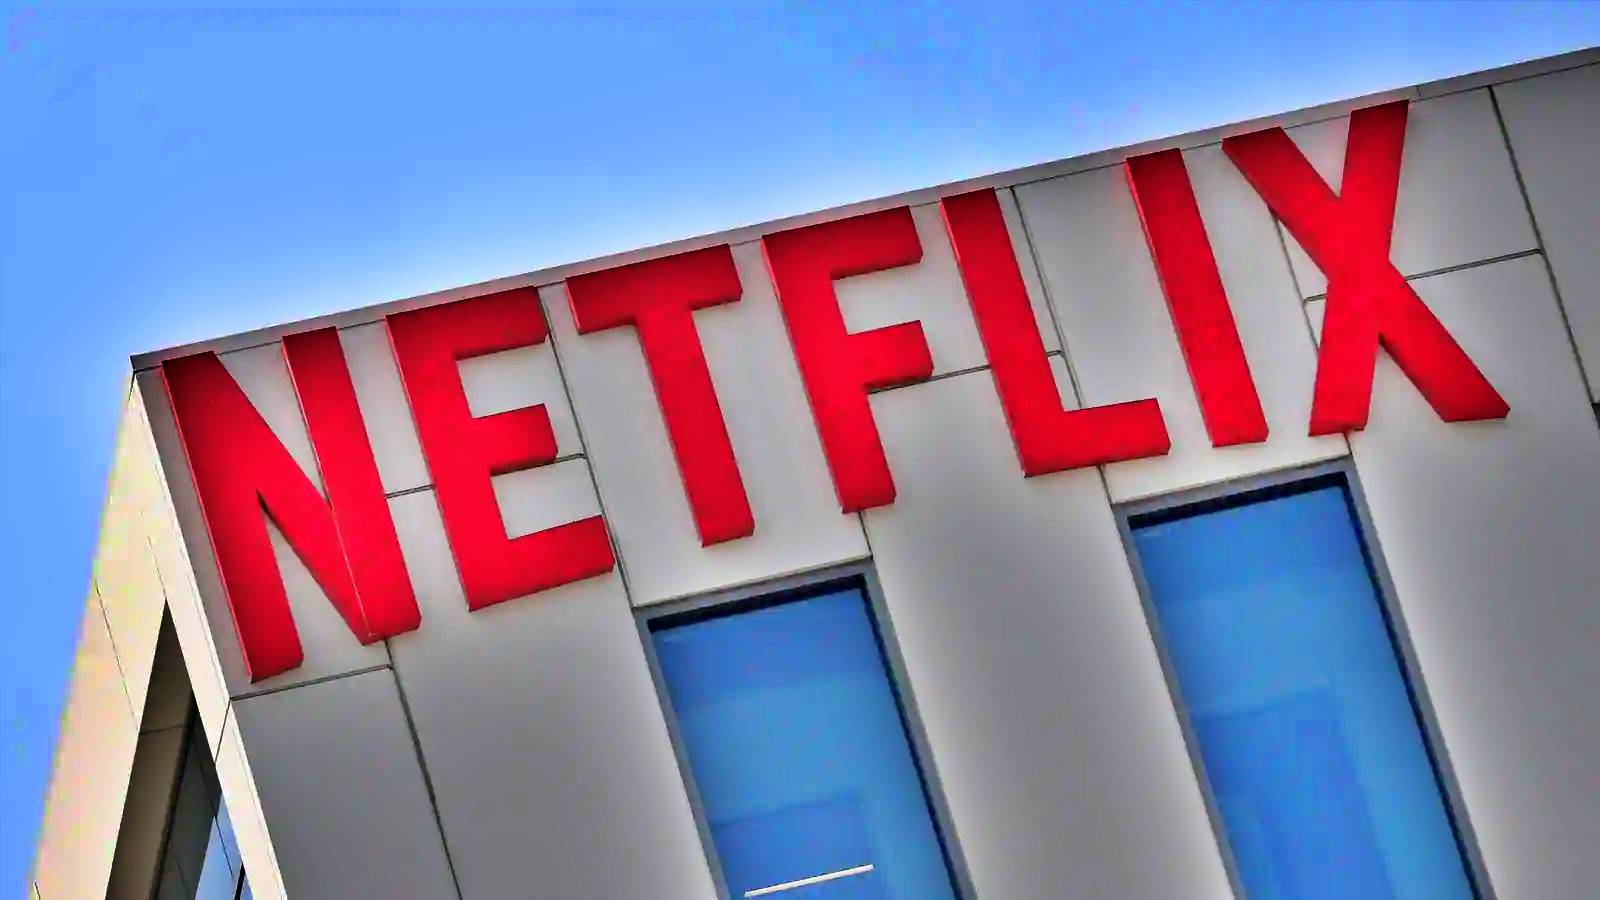 Netflix MAJOR bringt umstrittene Änderung 2022 heraus